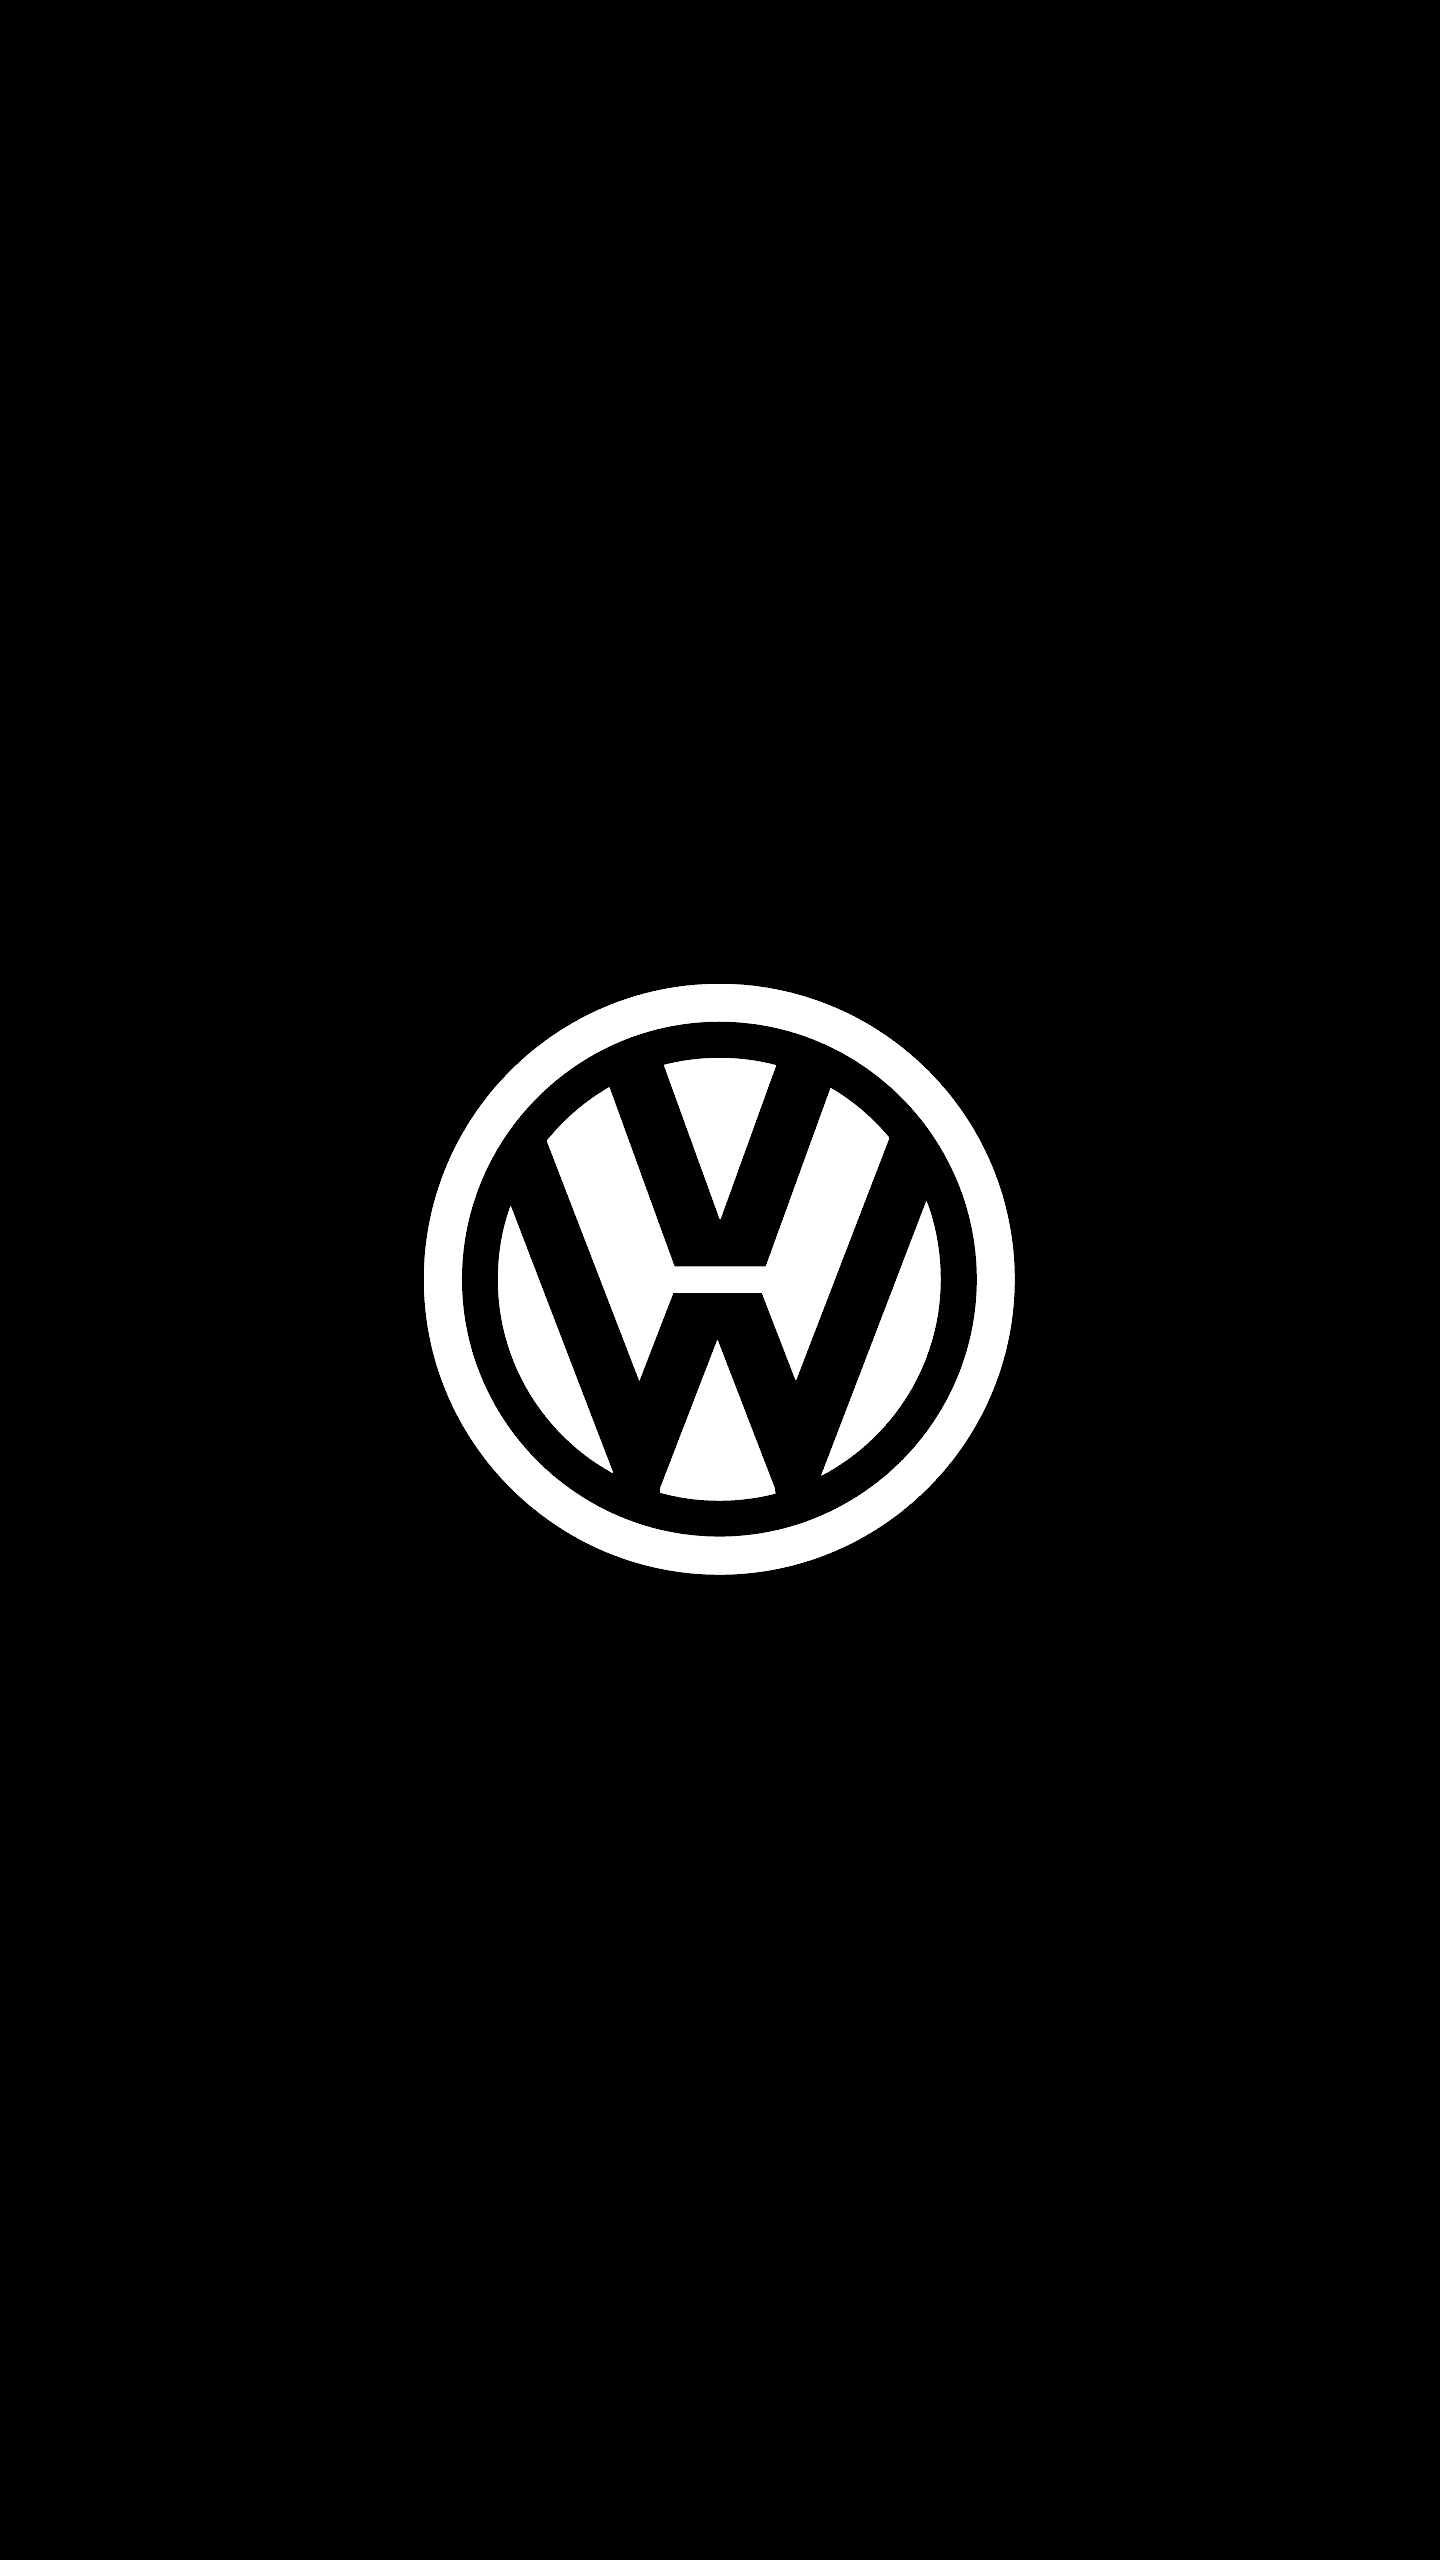 1440x2560 Wolkswagen 1440p/2K OLED Wallpaper | Fondos de pantalla de coches, Dibujos de coches, Logos de coches